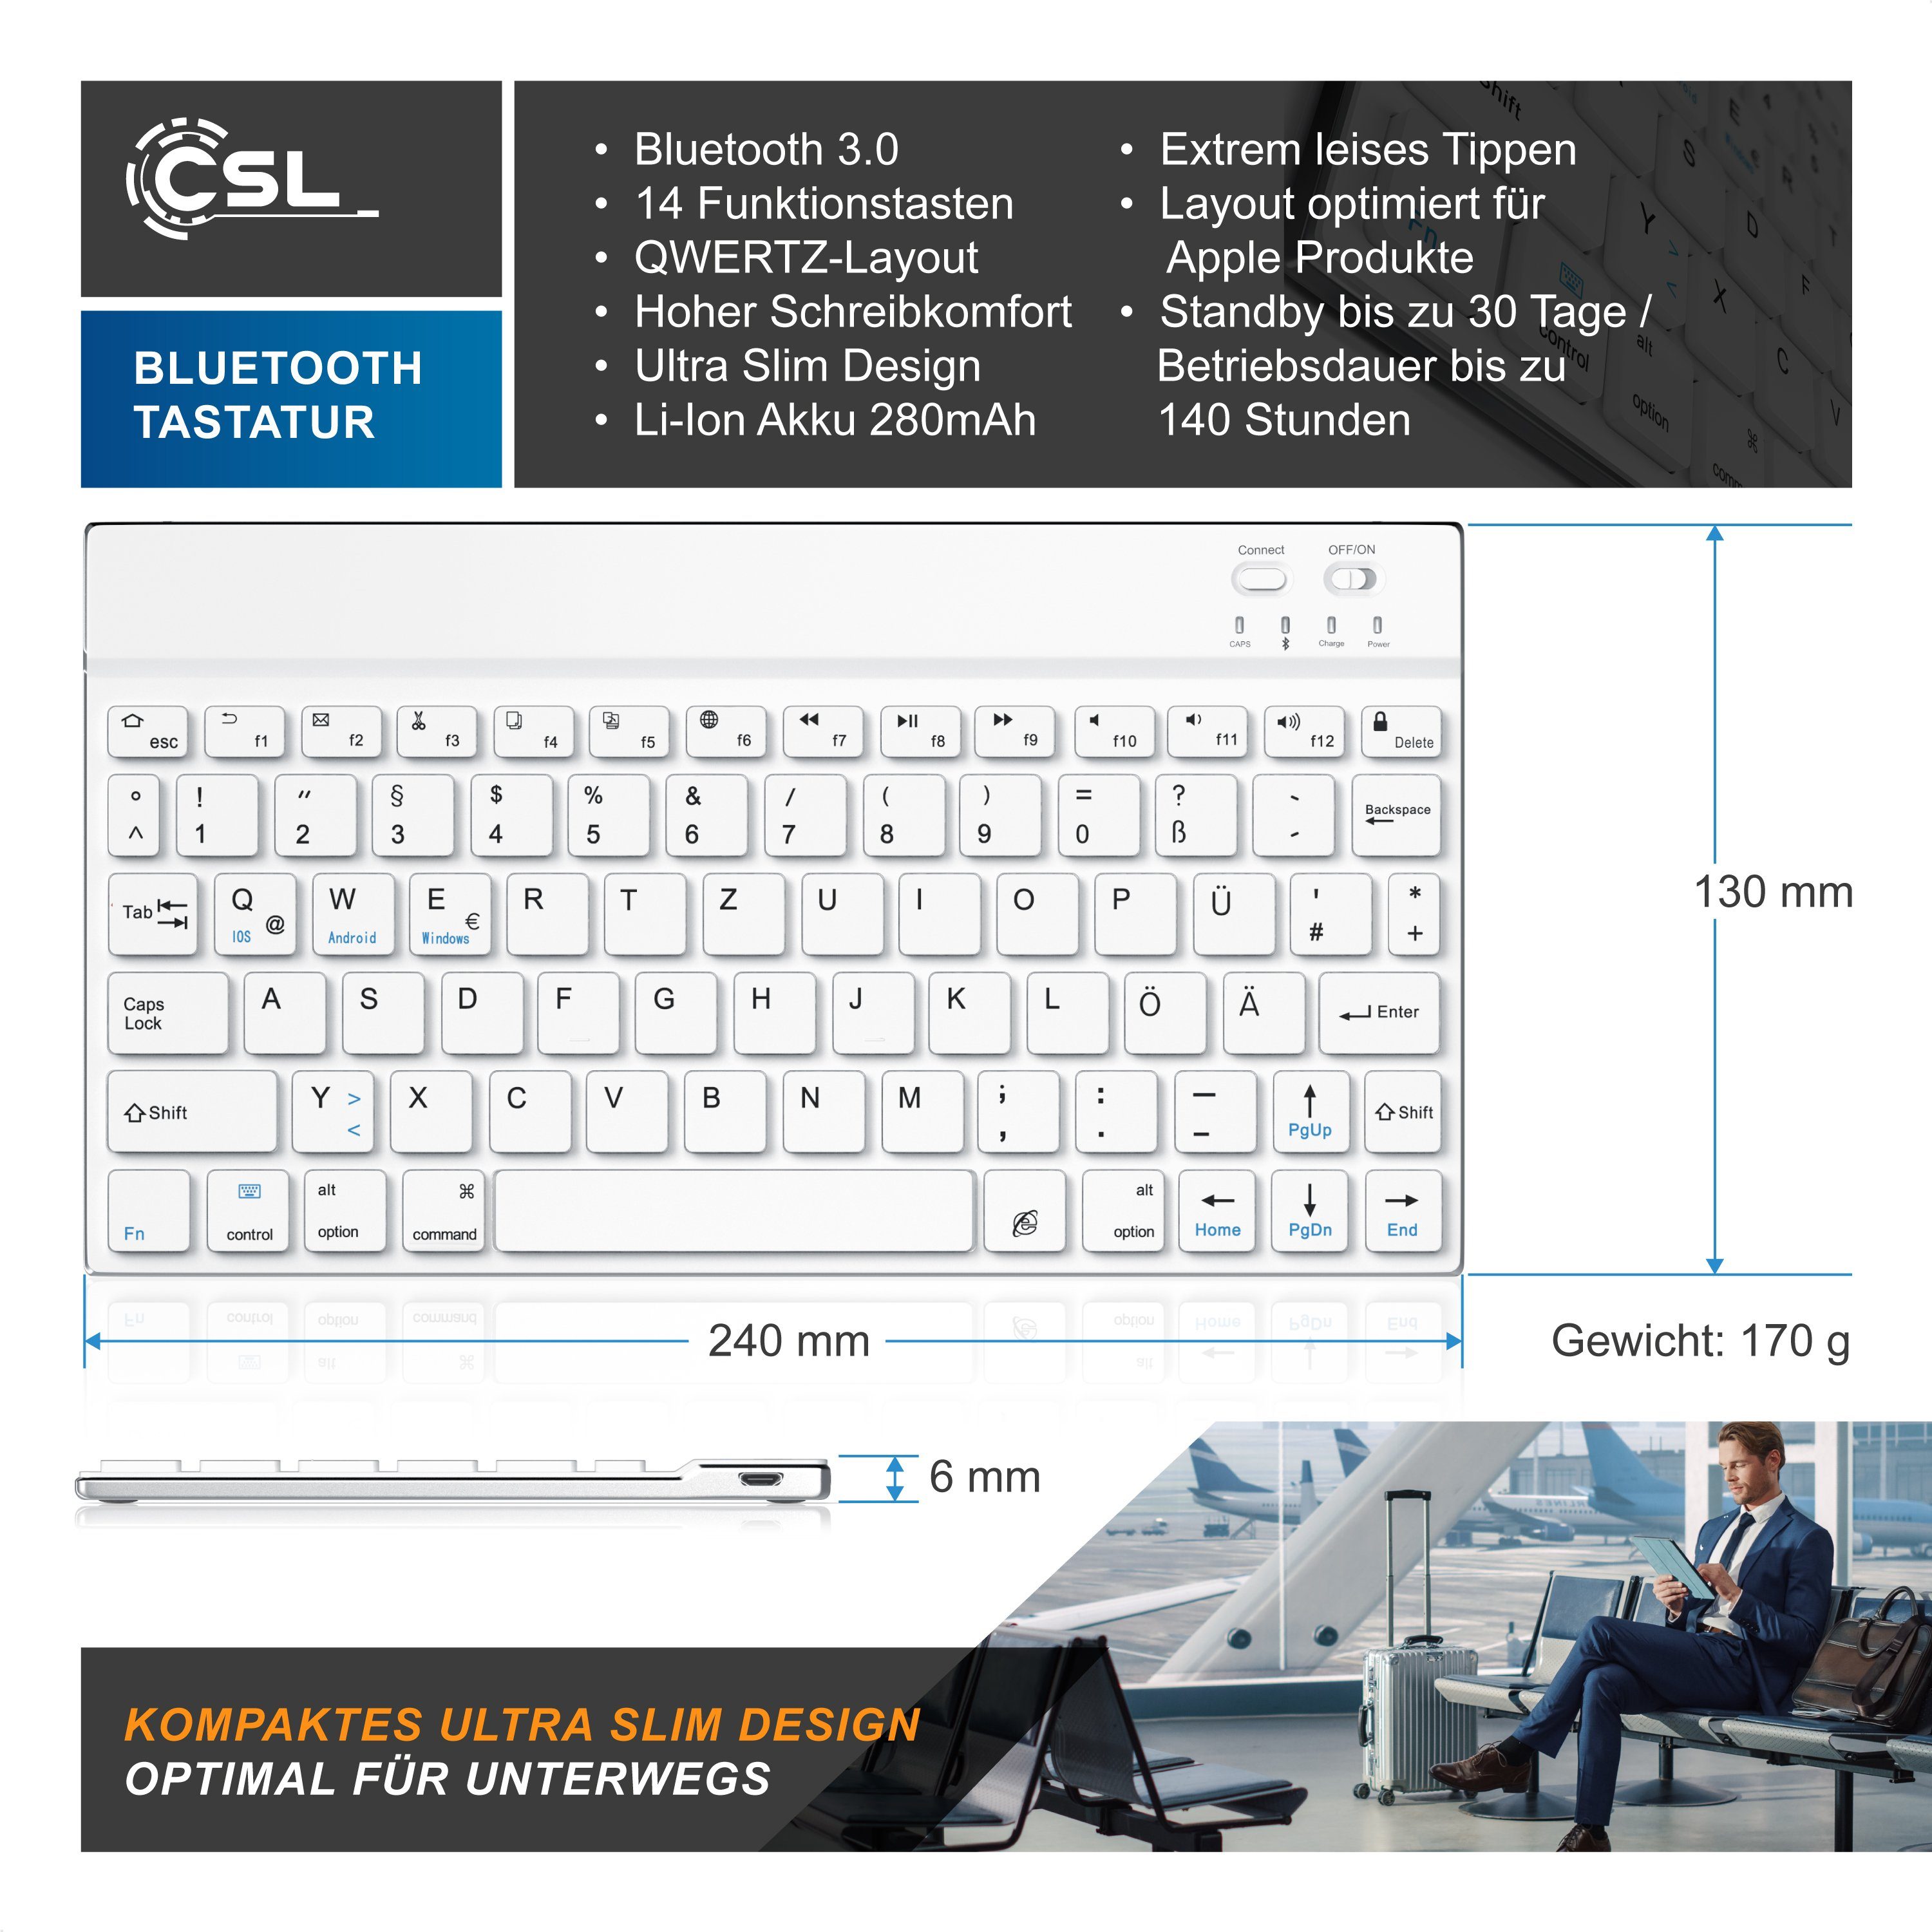 Alugehäuse, Keyboard, weiß/silber (Ultra 3.0) Layout, Wireless-Tastatur Slim Bluetooth, BT CSL Deutsches